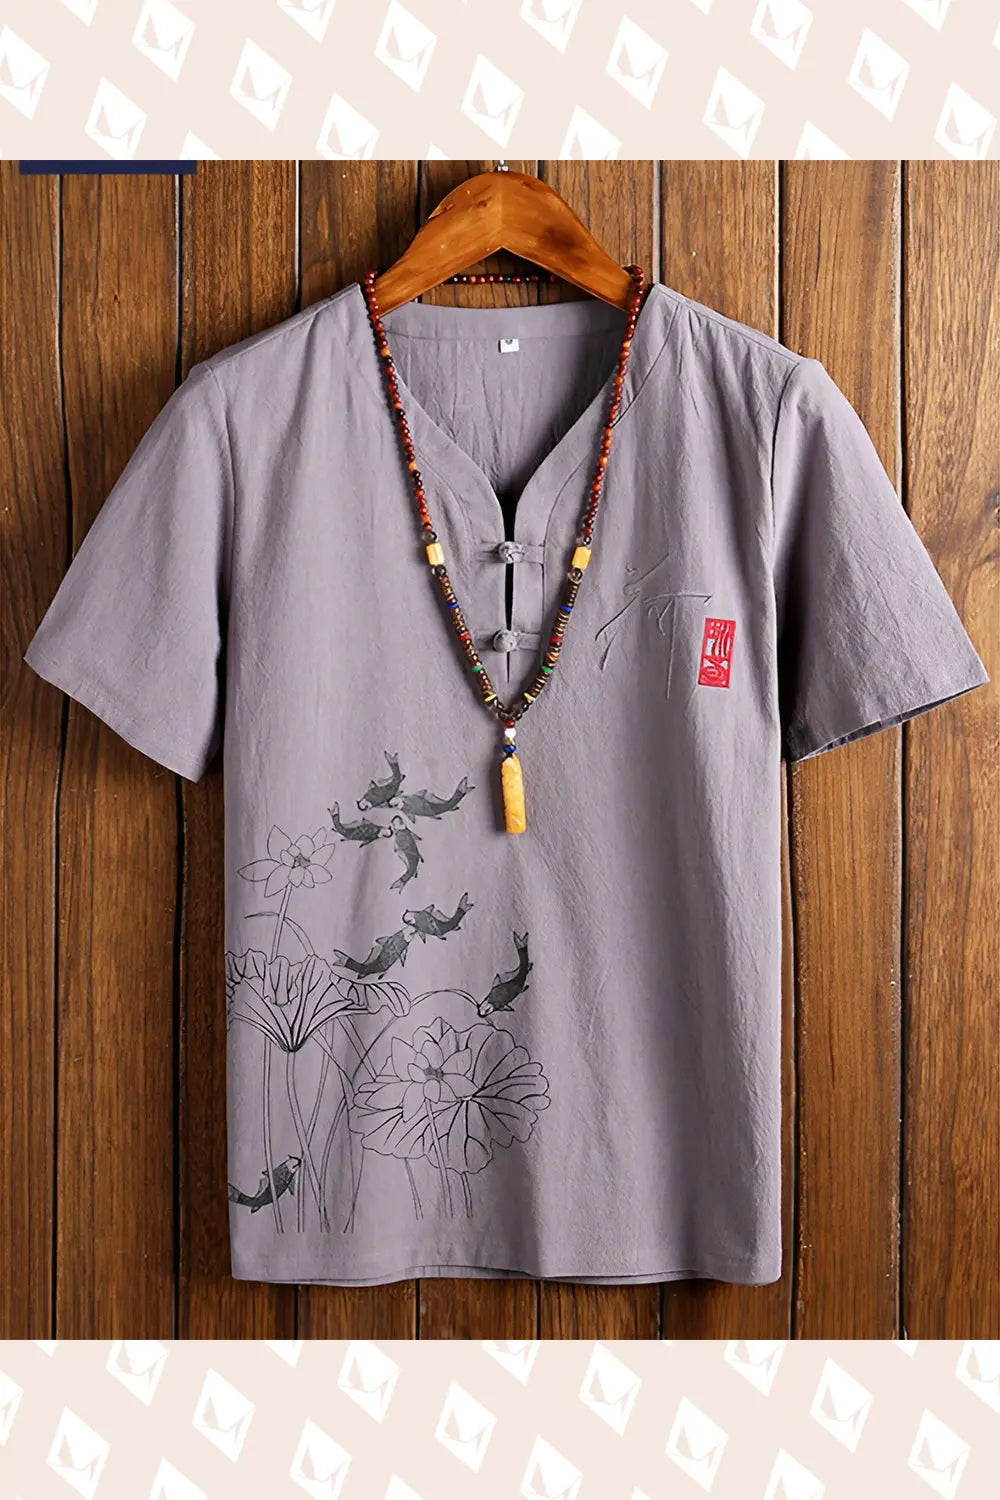 Koi Carp T-Shirt - Gray - Strange Clothes